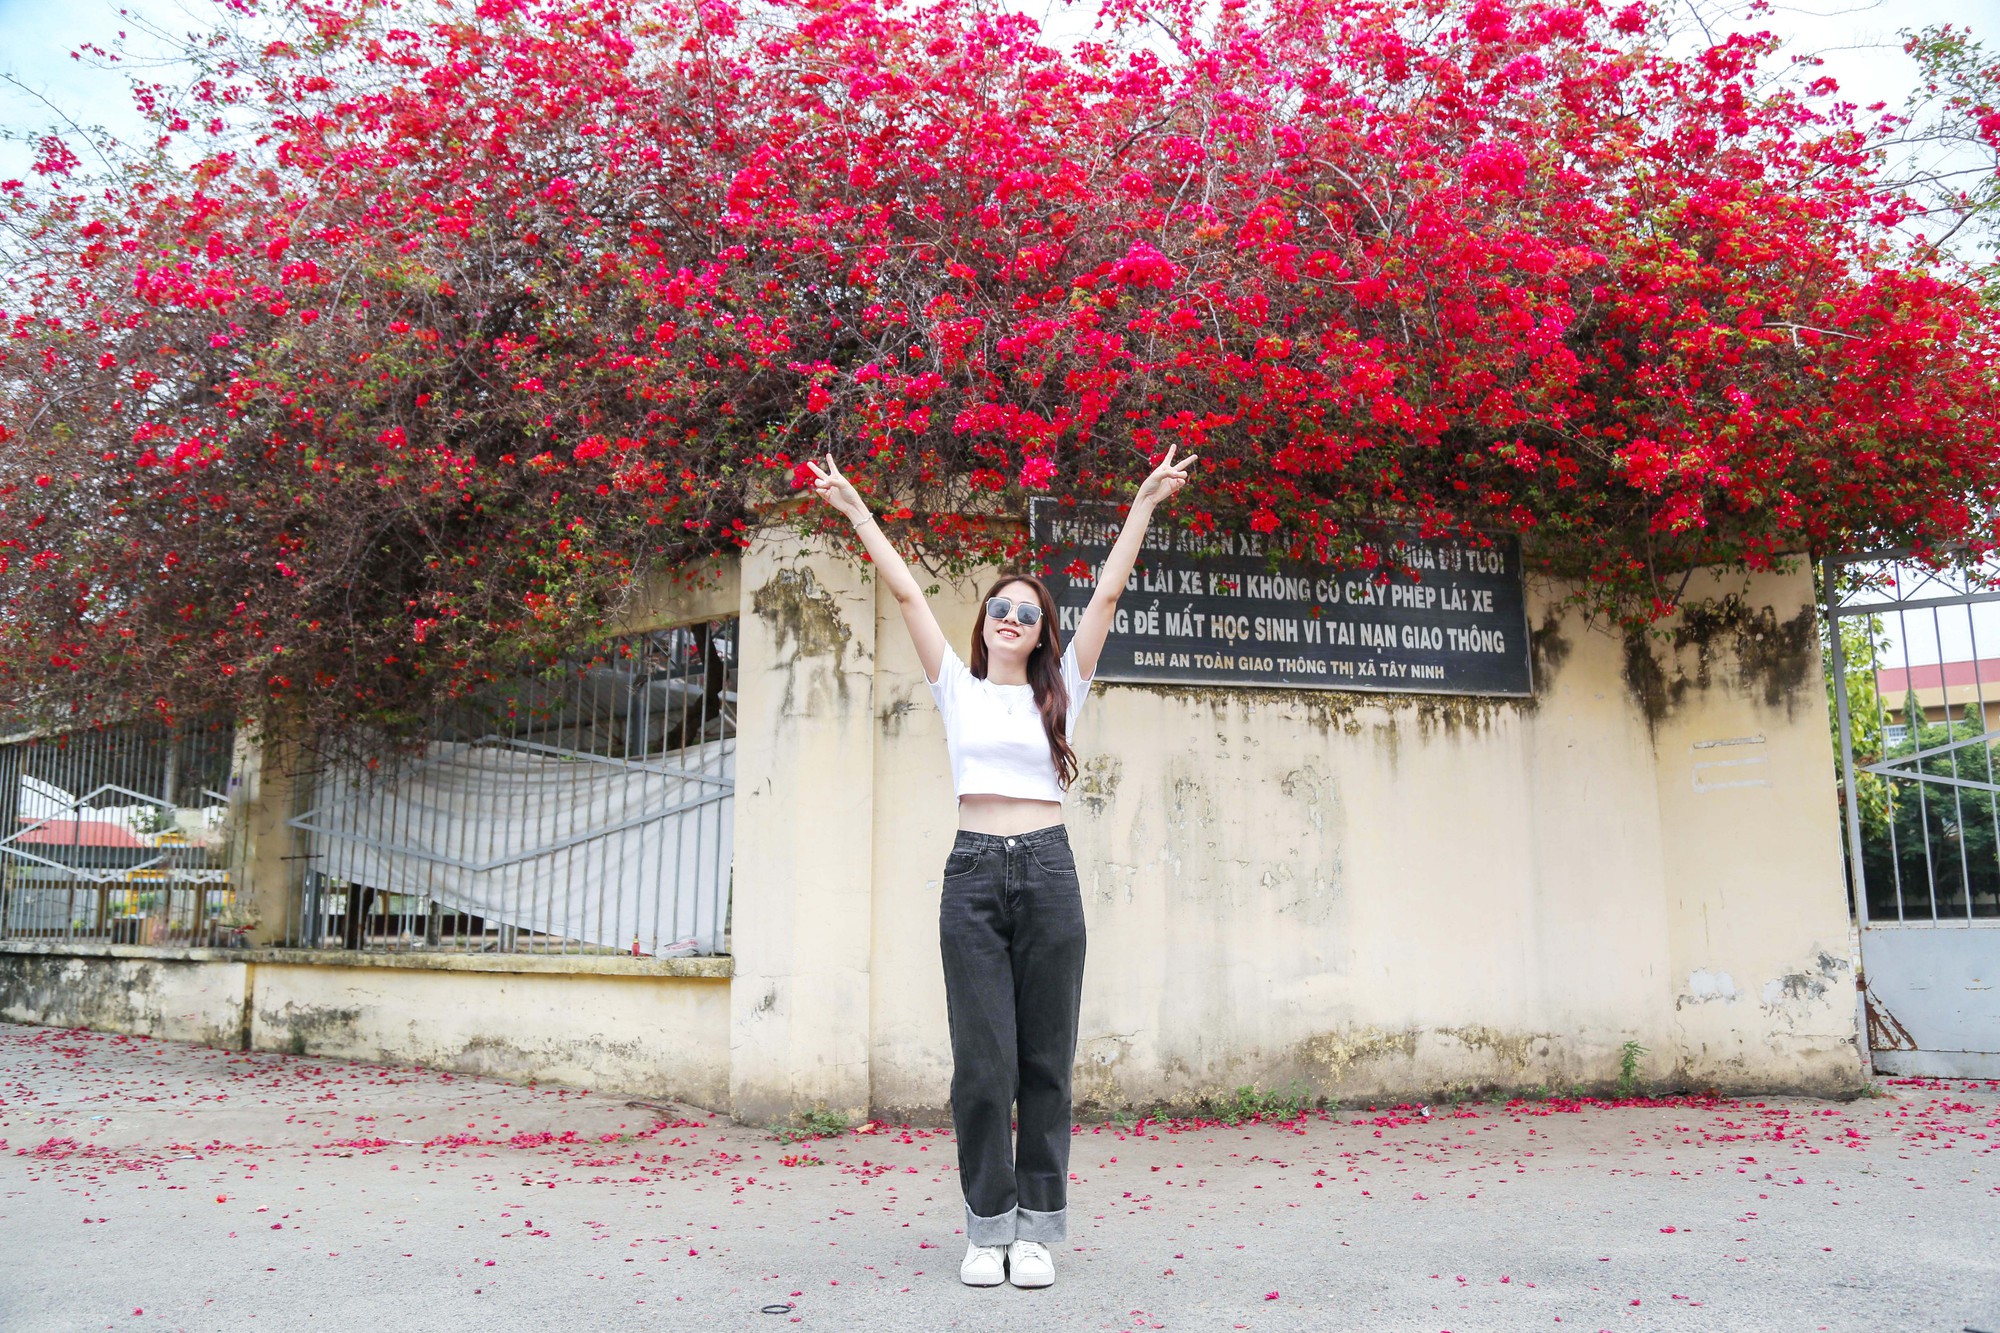 Giới trẻ hào hứng &quot;check in&quot; giàn hoa giấy trước cổng trường hot nhất Tây Ninh - Ảnh 1.